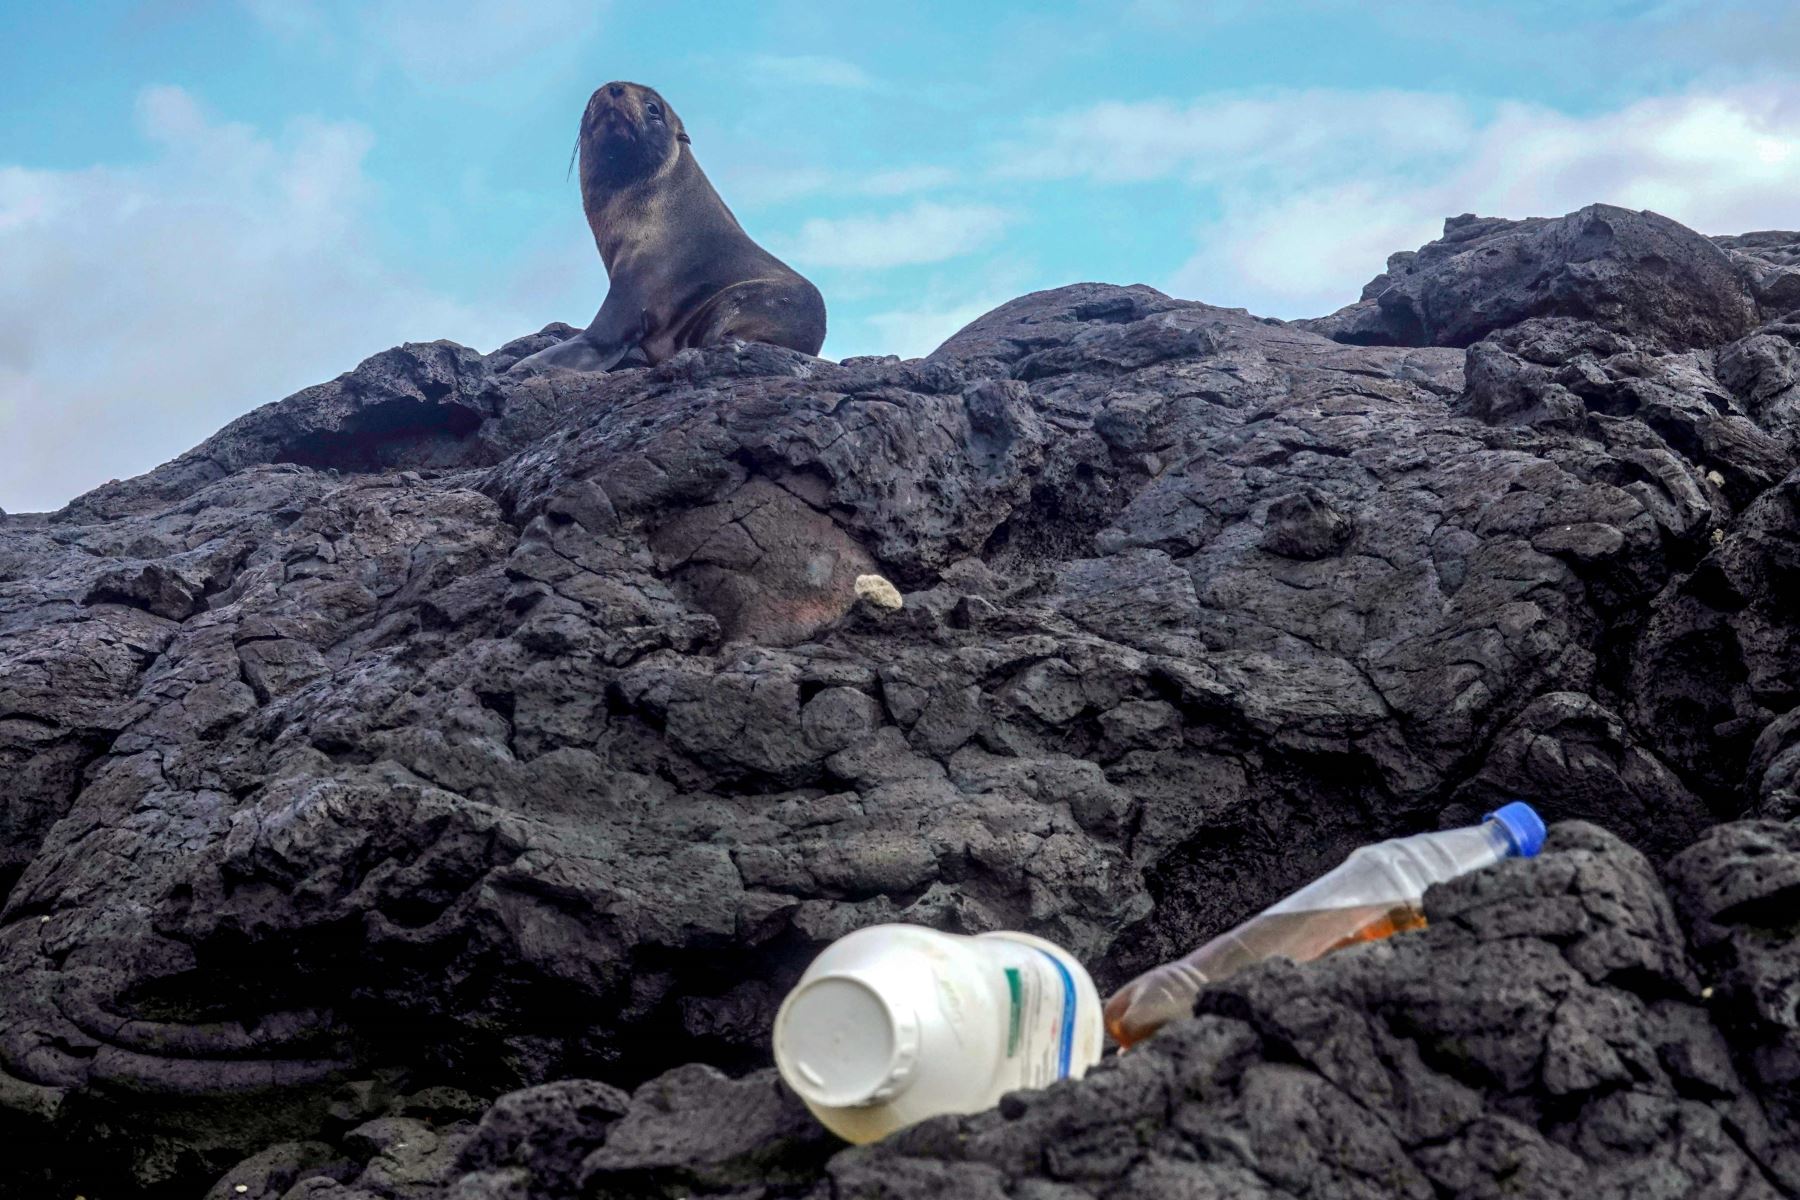 Un lobo marino de Galápagos (Arctocephalus galapagoensis) descansa cerca de una franja de basura en la Isla Isabela en el Archipiélago de las Islas Galápagos en el Océano Pacífico a 1000 km de la costa de Ecuador, el 21 de febrero de 2019. Foto: AFP